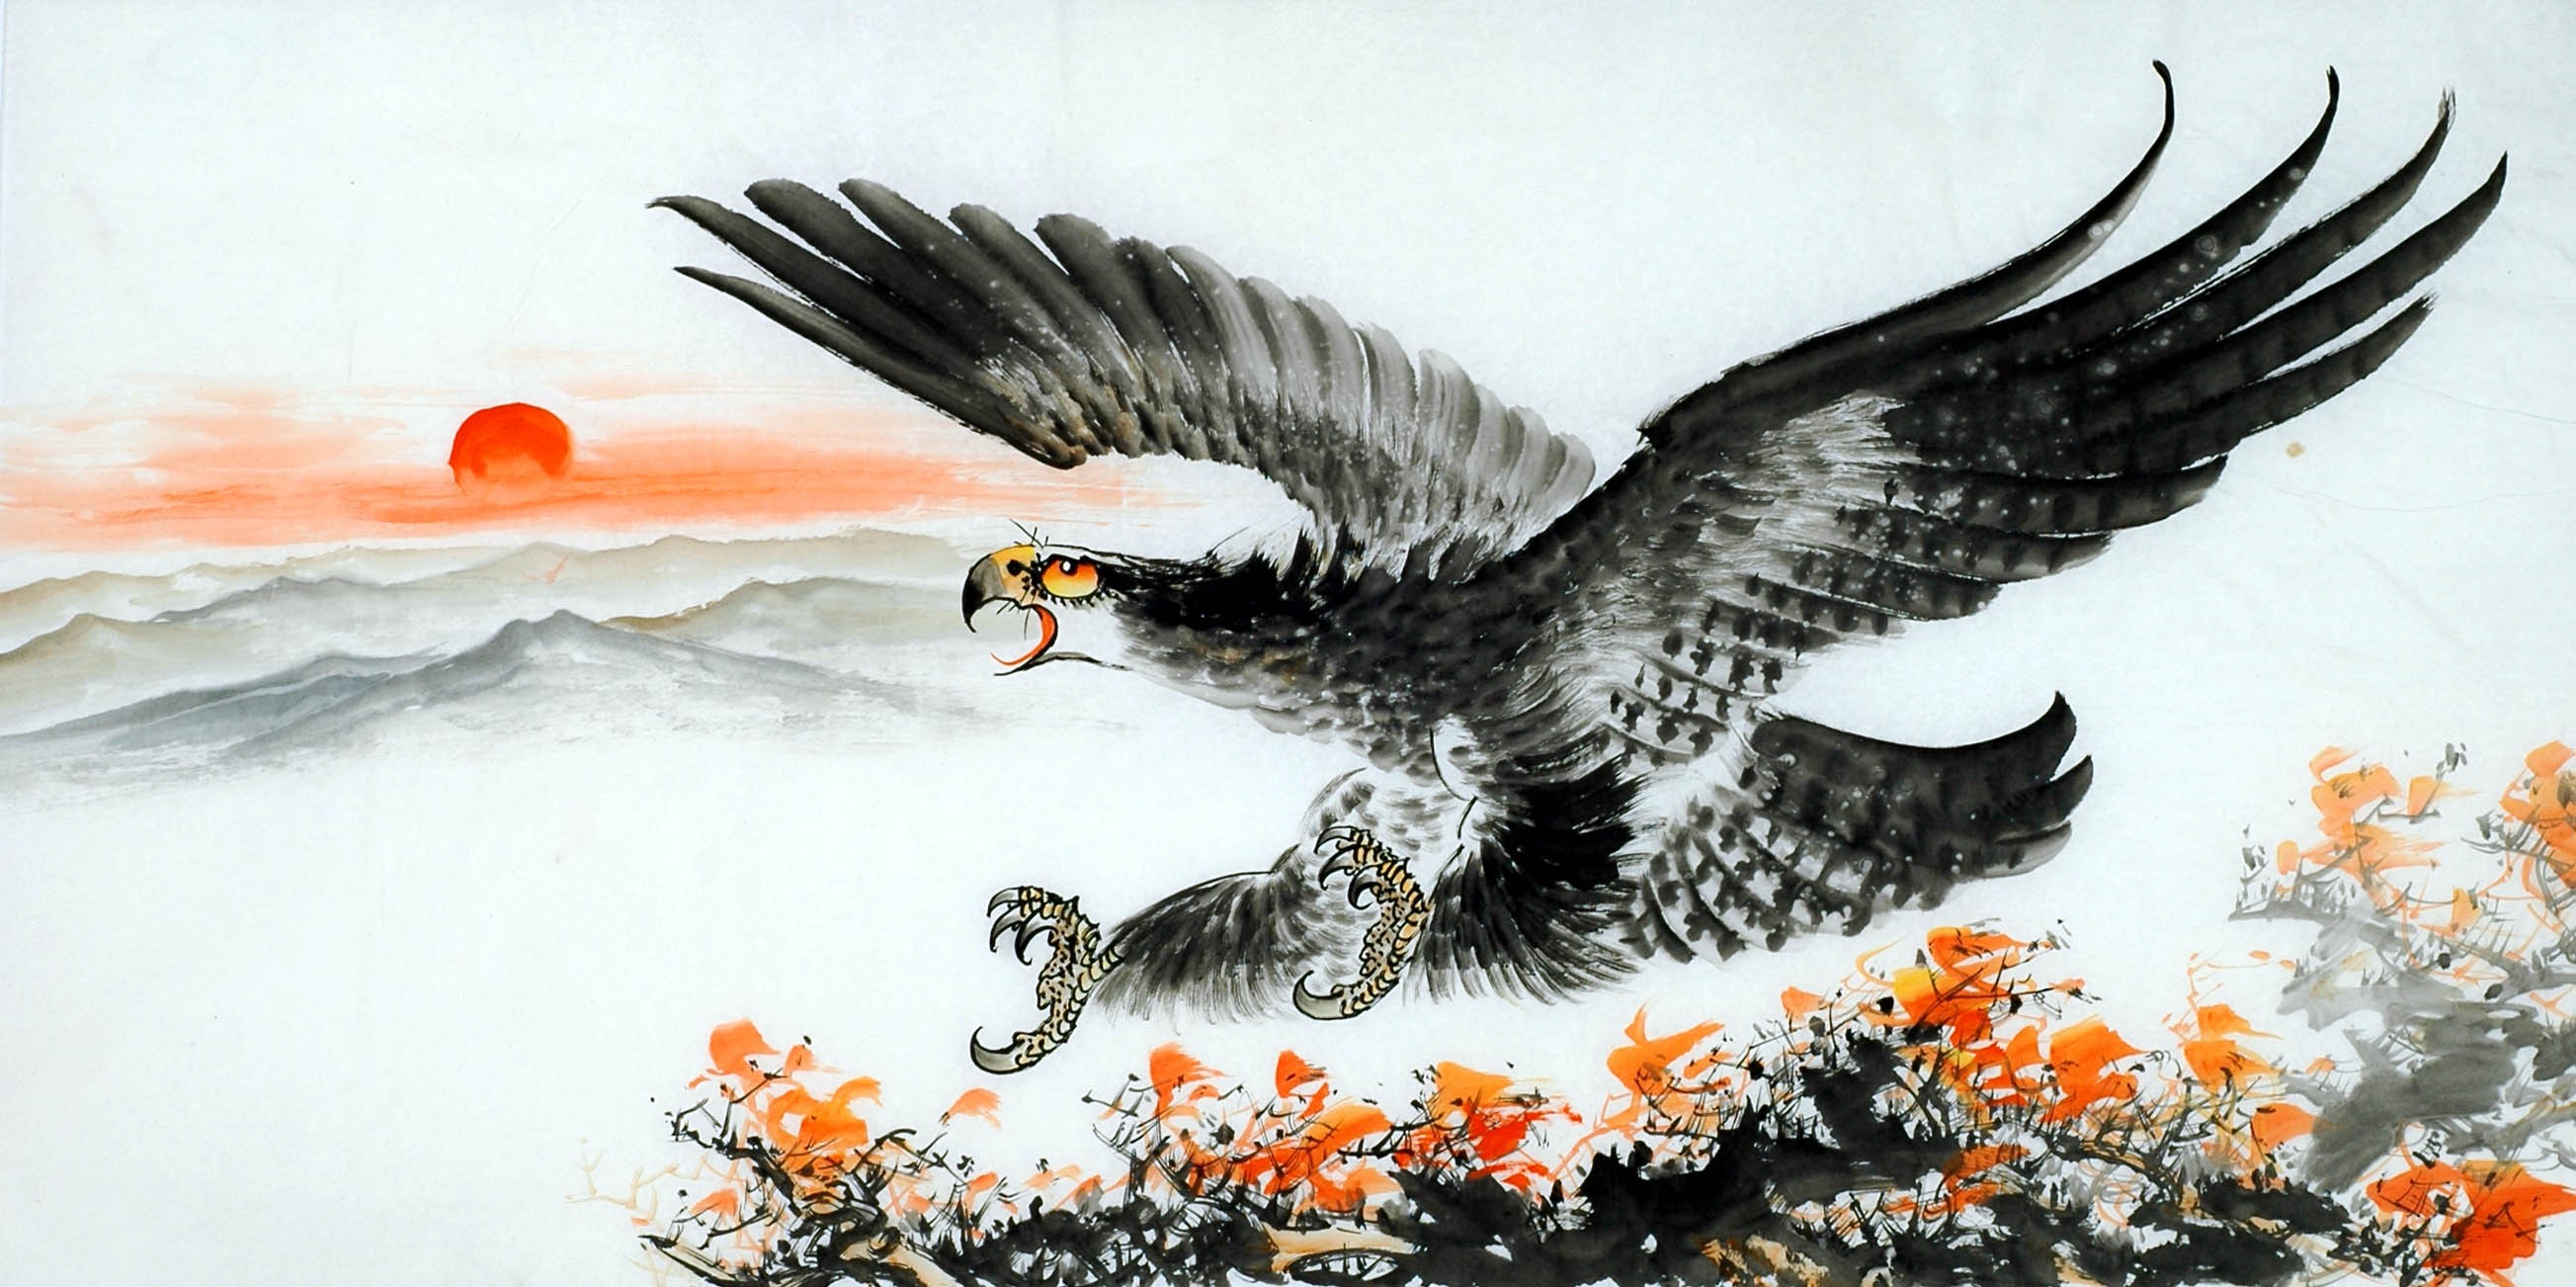 Chinese Eagle Painting - CNAG011350